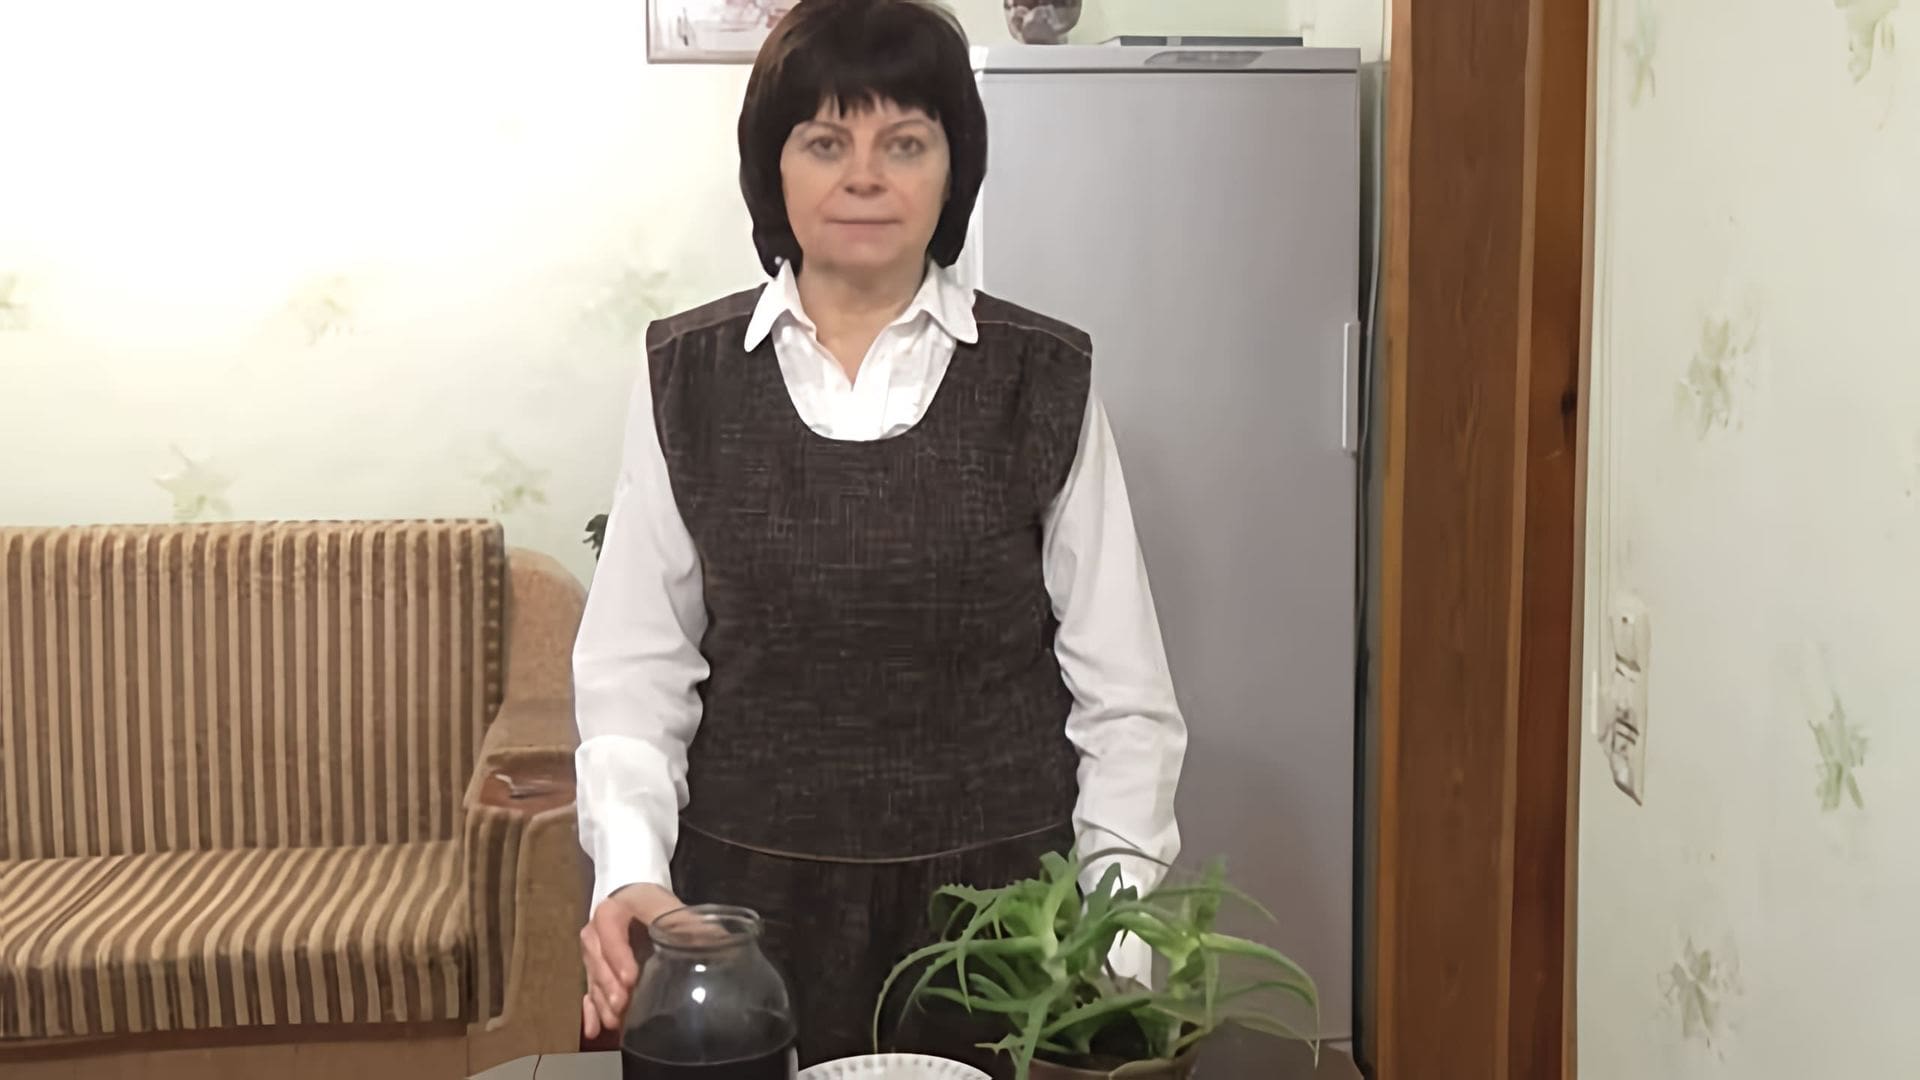 В этом видео рассказывается о рецепте общеукрепляющего средства, состоящего из алоэ, меда и кагора